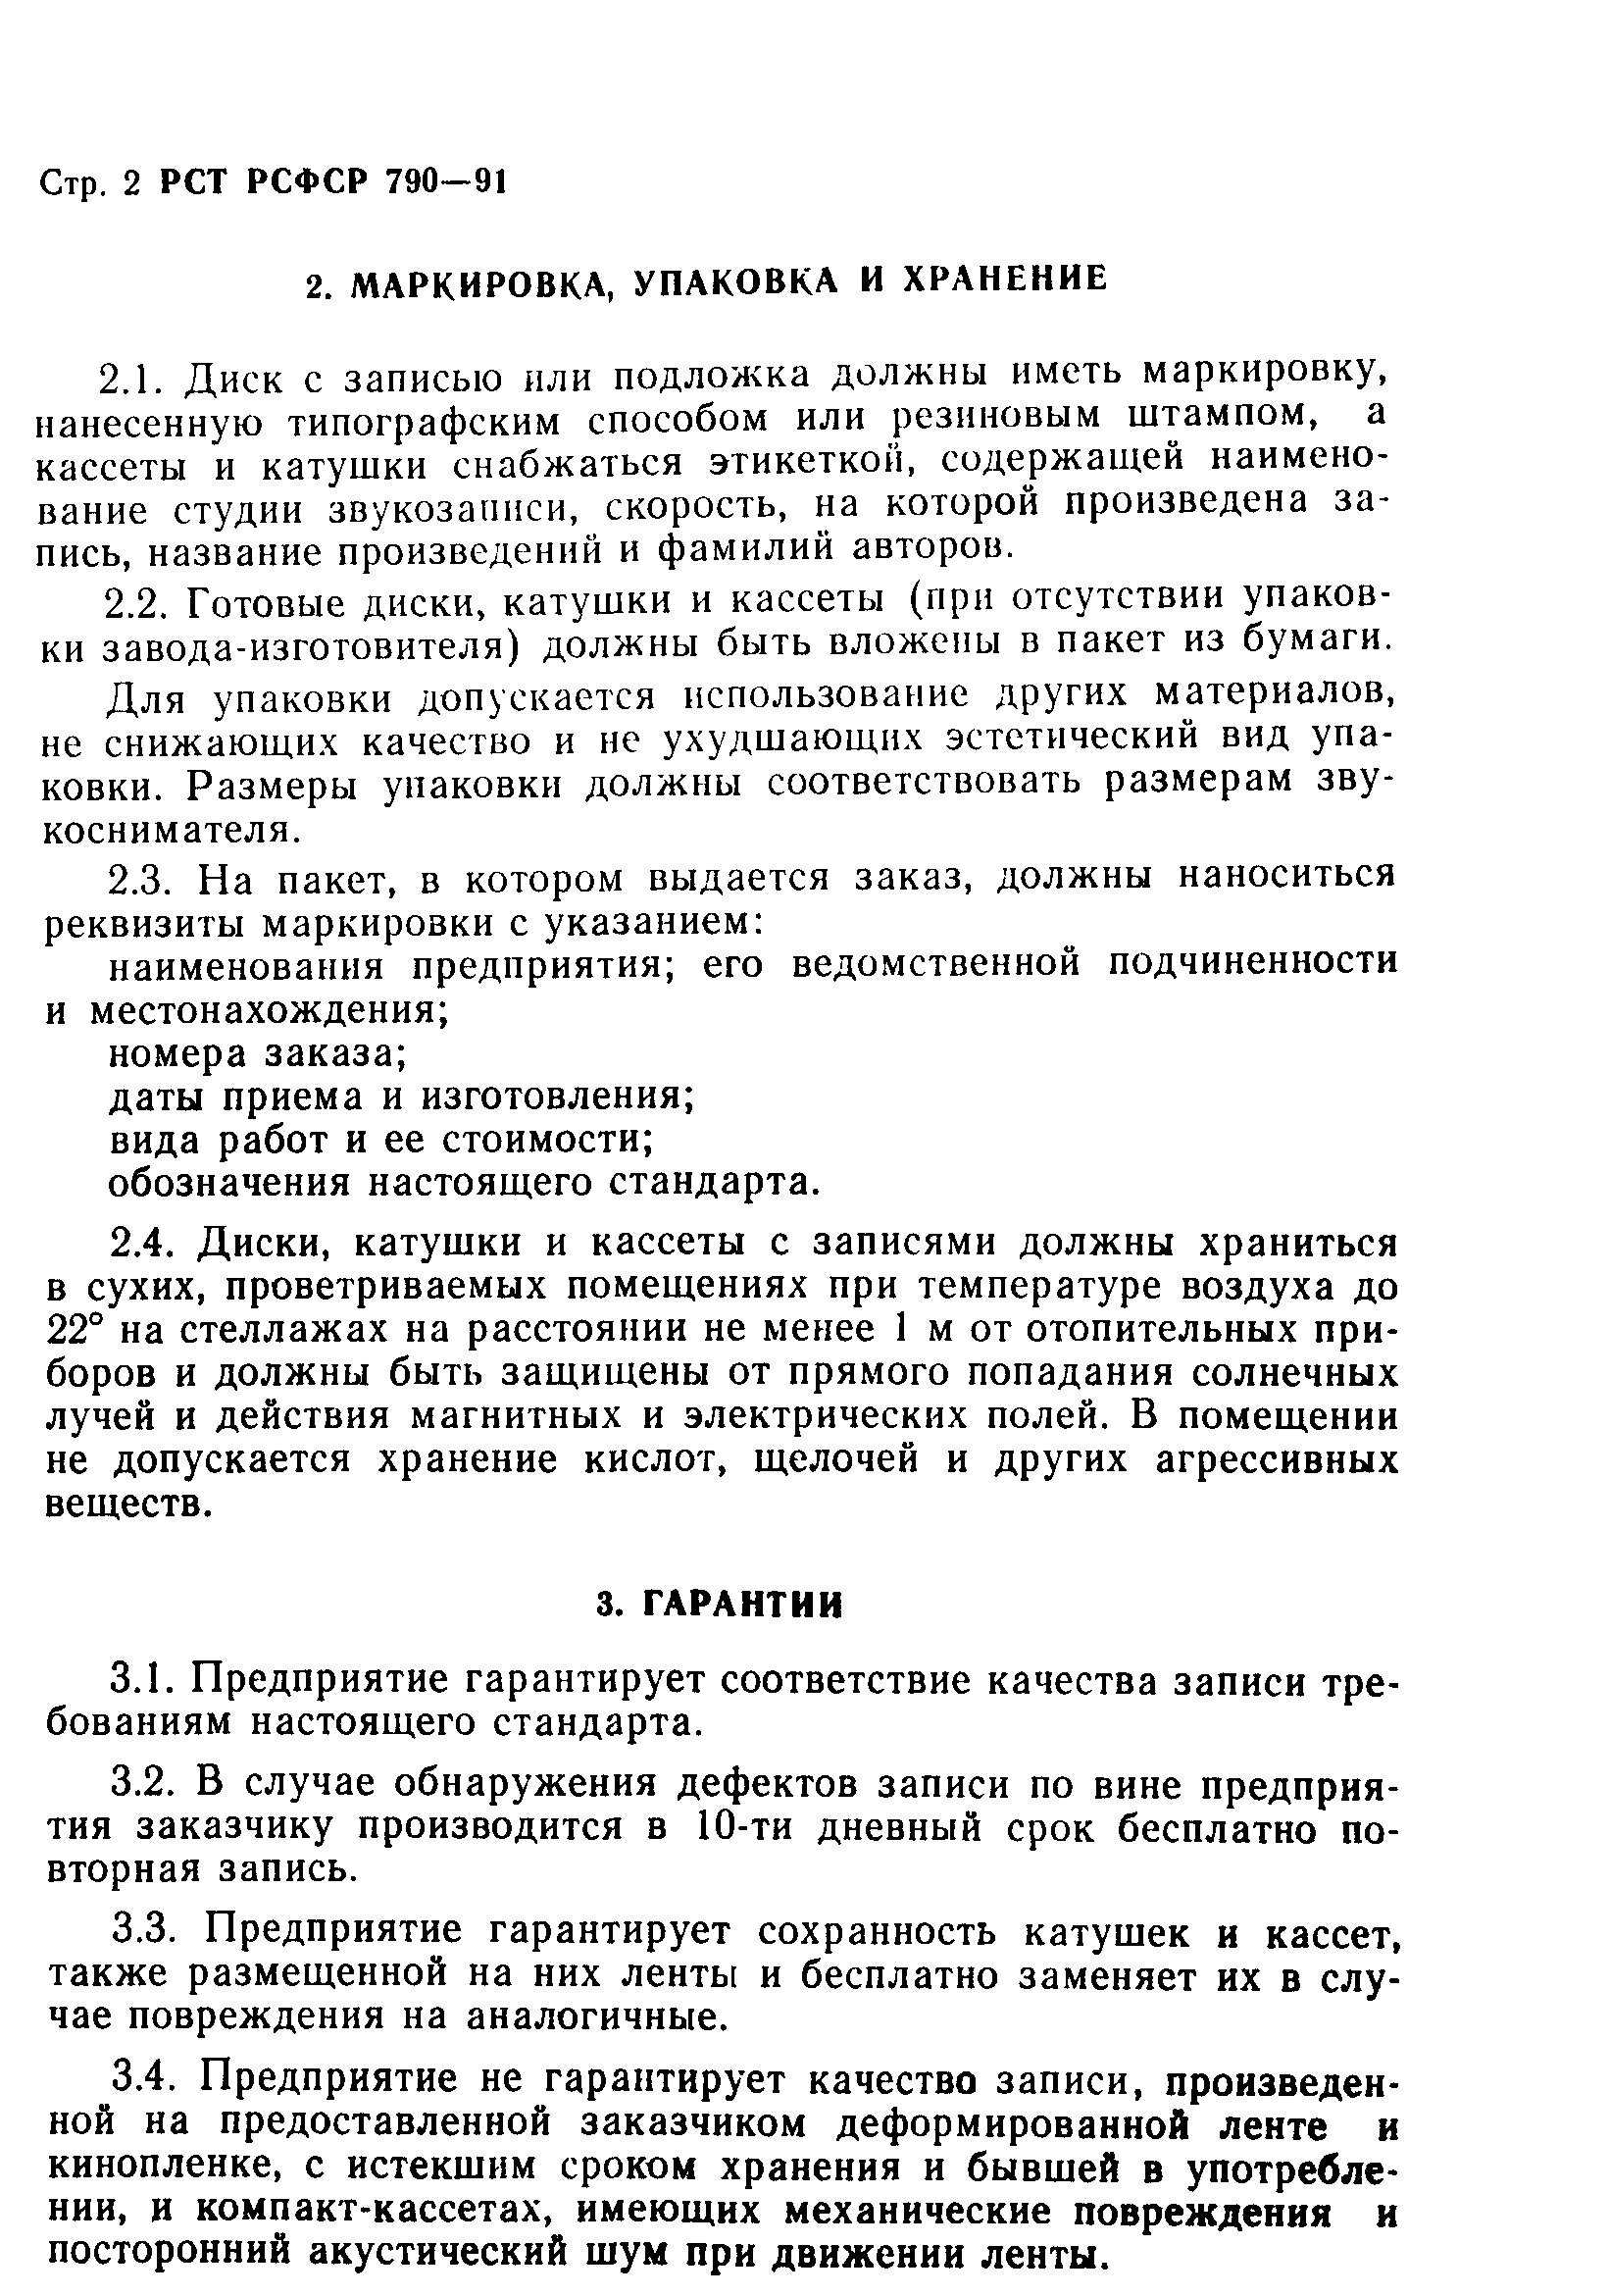 РСТ РСФСР 790-91